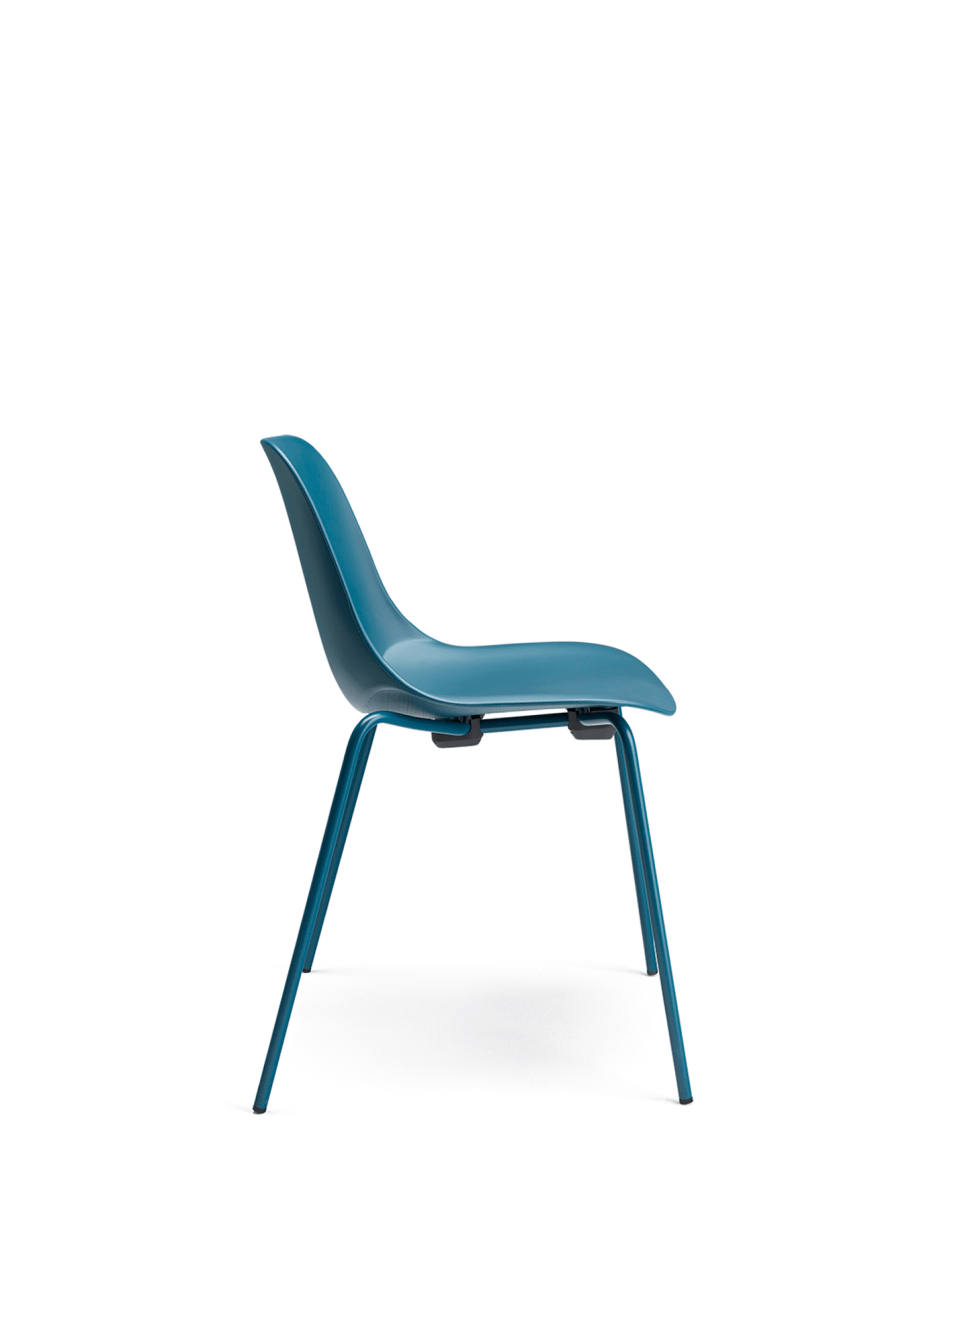 chaise de collectivité bleue, ou chaise de réunion bleue pour coworking en open space